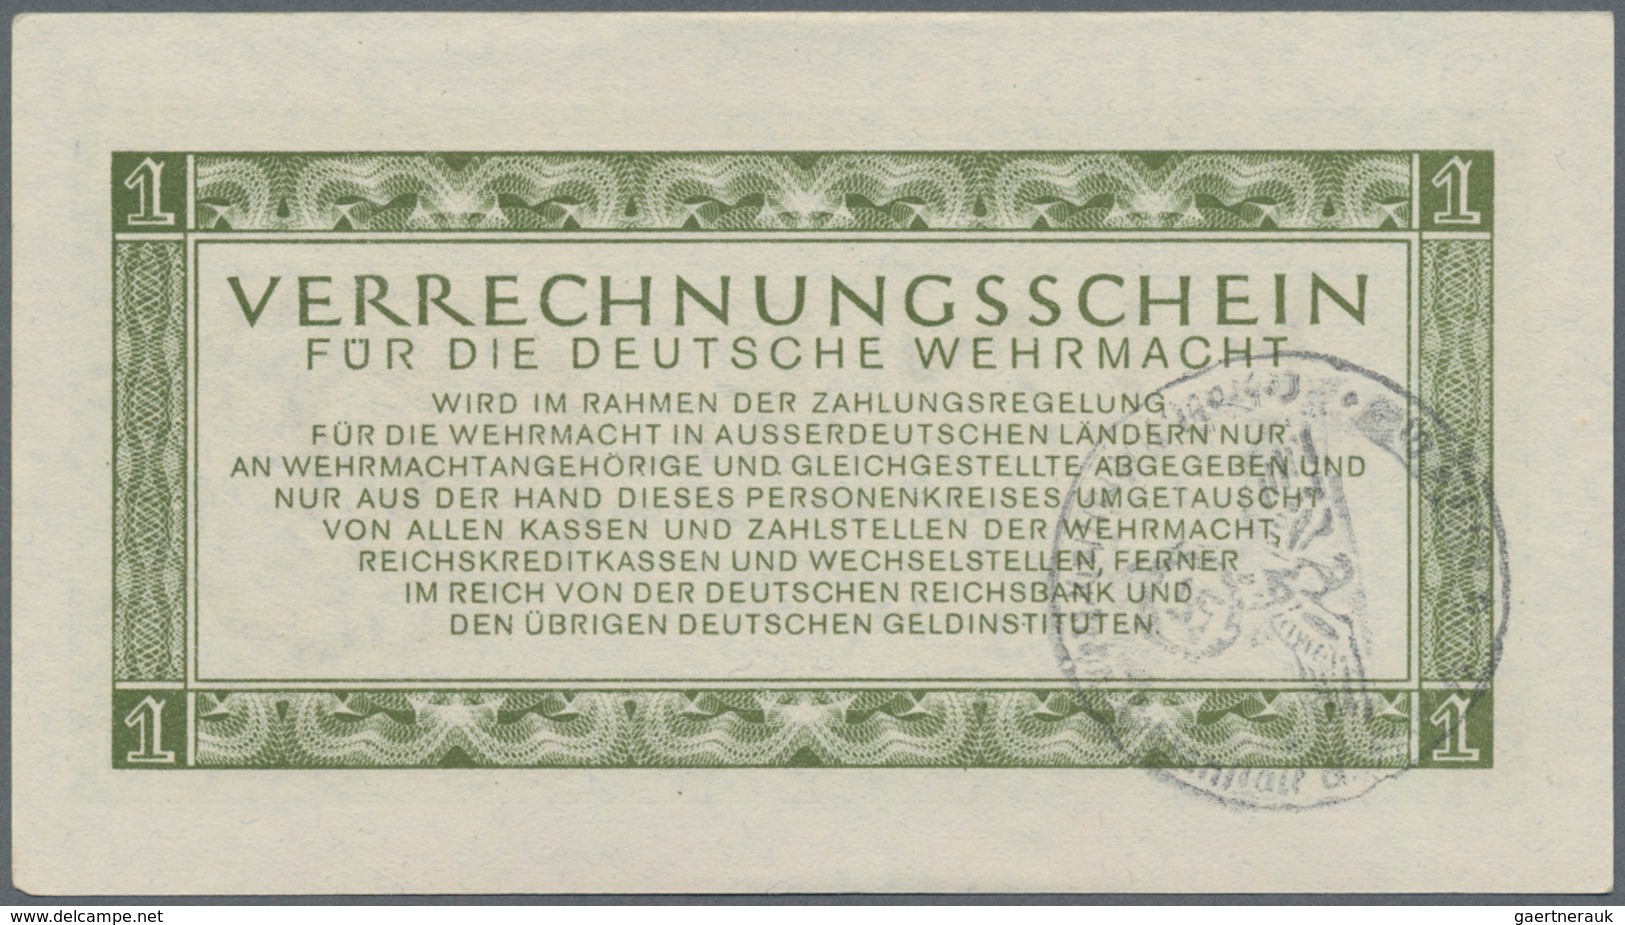 Deutschland - Konzentrations- und Kriegsgefangenenlager: Lot mit 6 Banknoten der Verrechnungsscheine